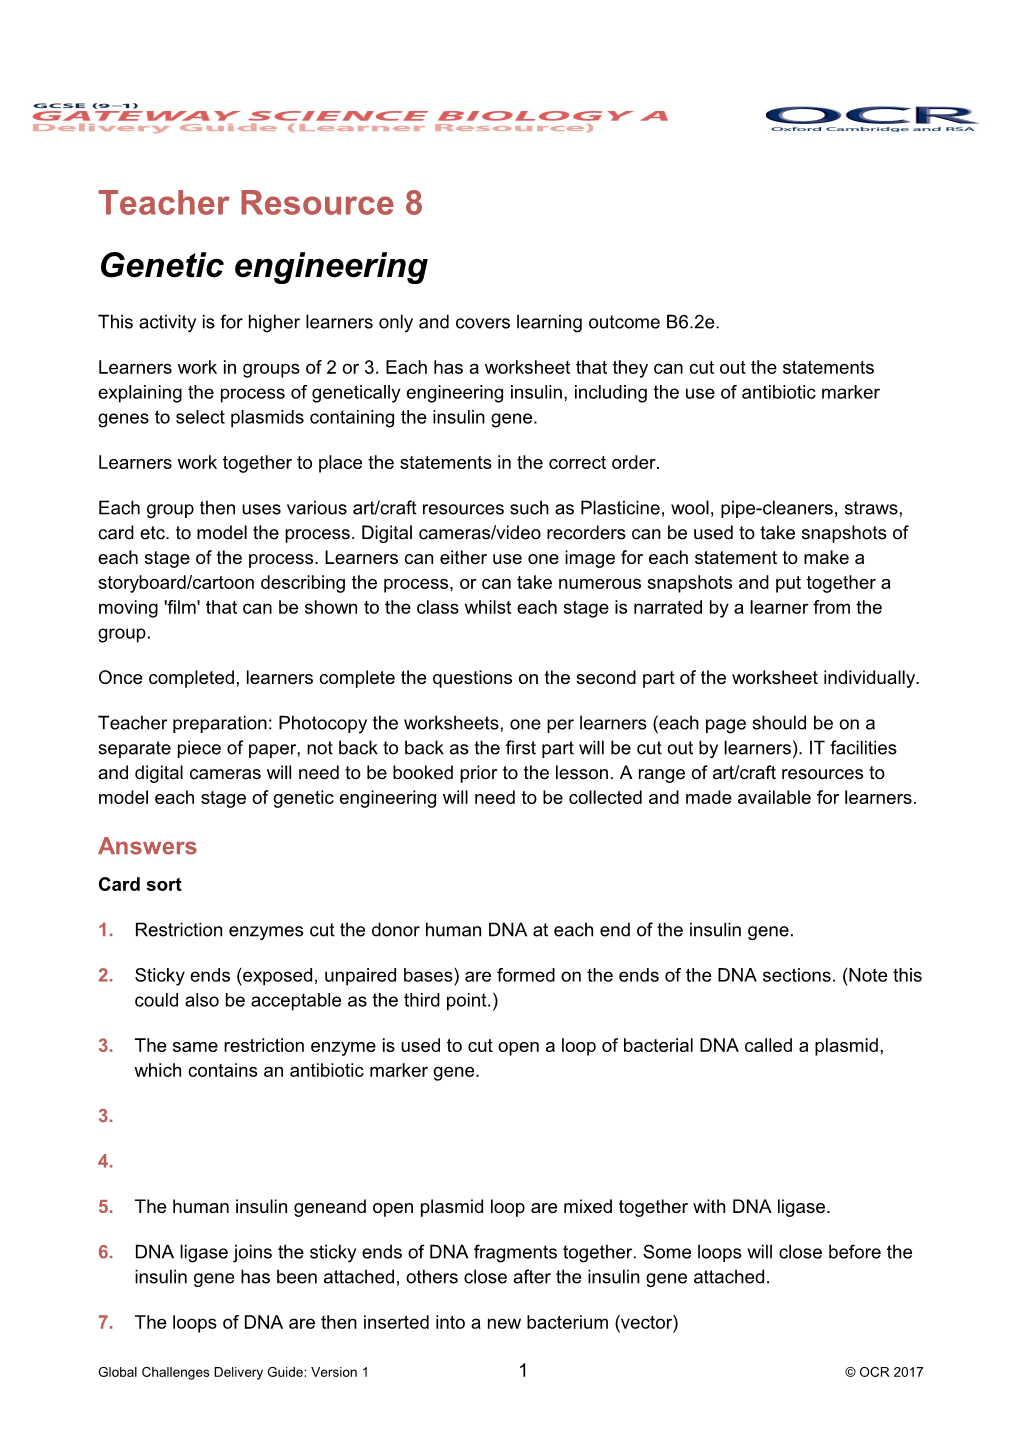 Teacher Resource 8: Genetic Engineering